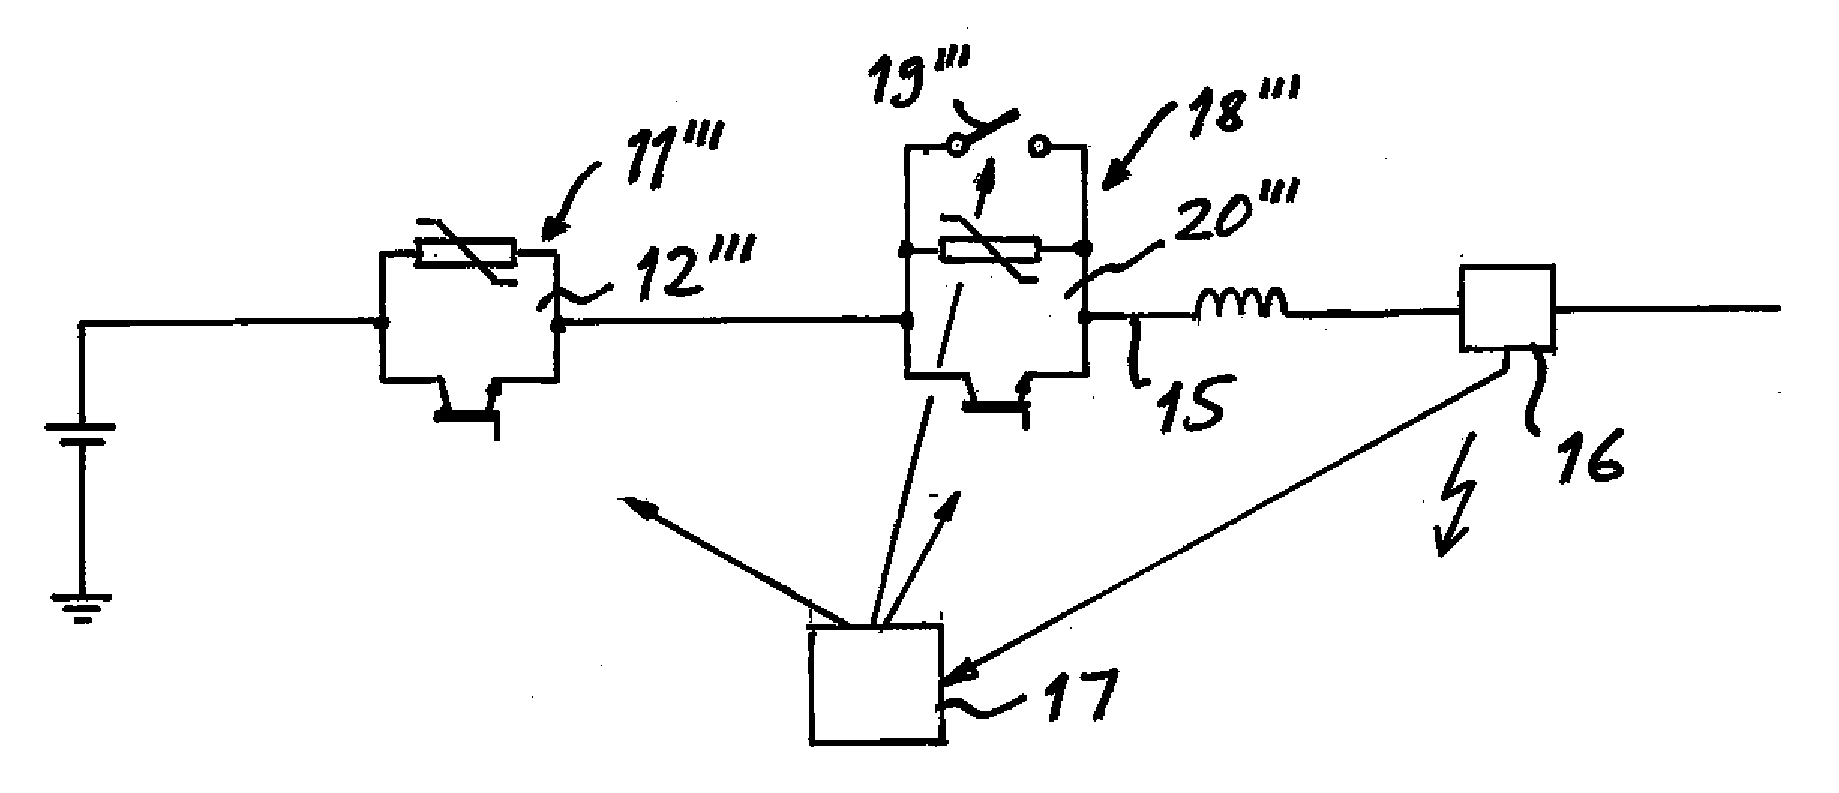 High voltage DC breaker apparatus